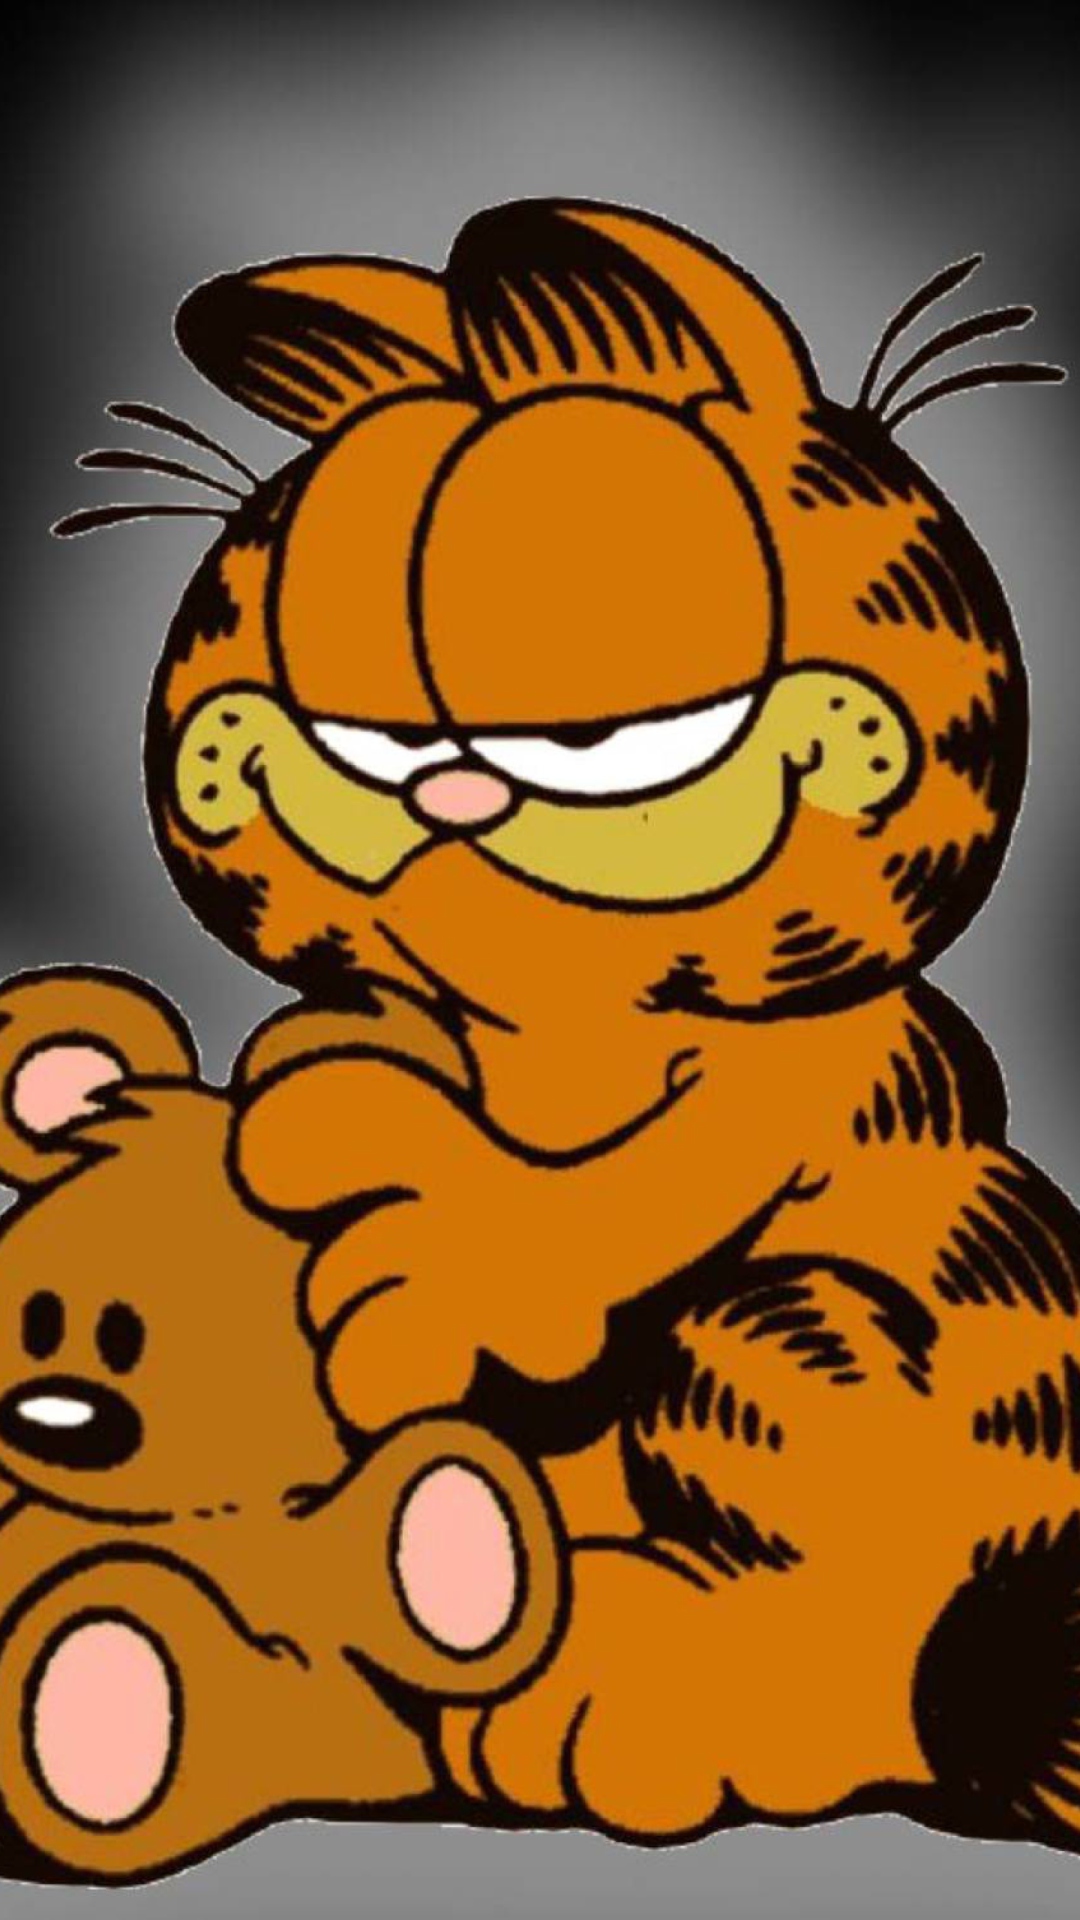 Garfield wallpaper 1080x1920